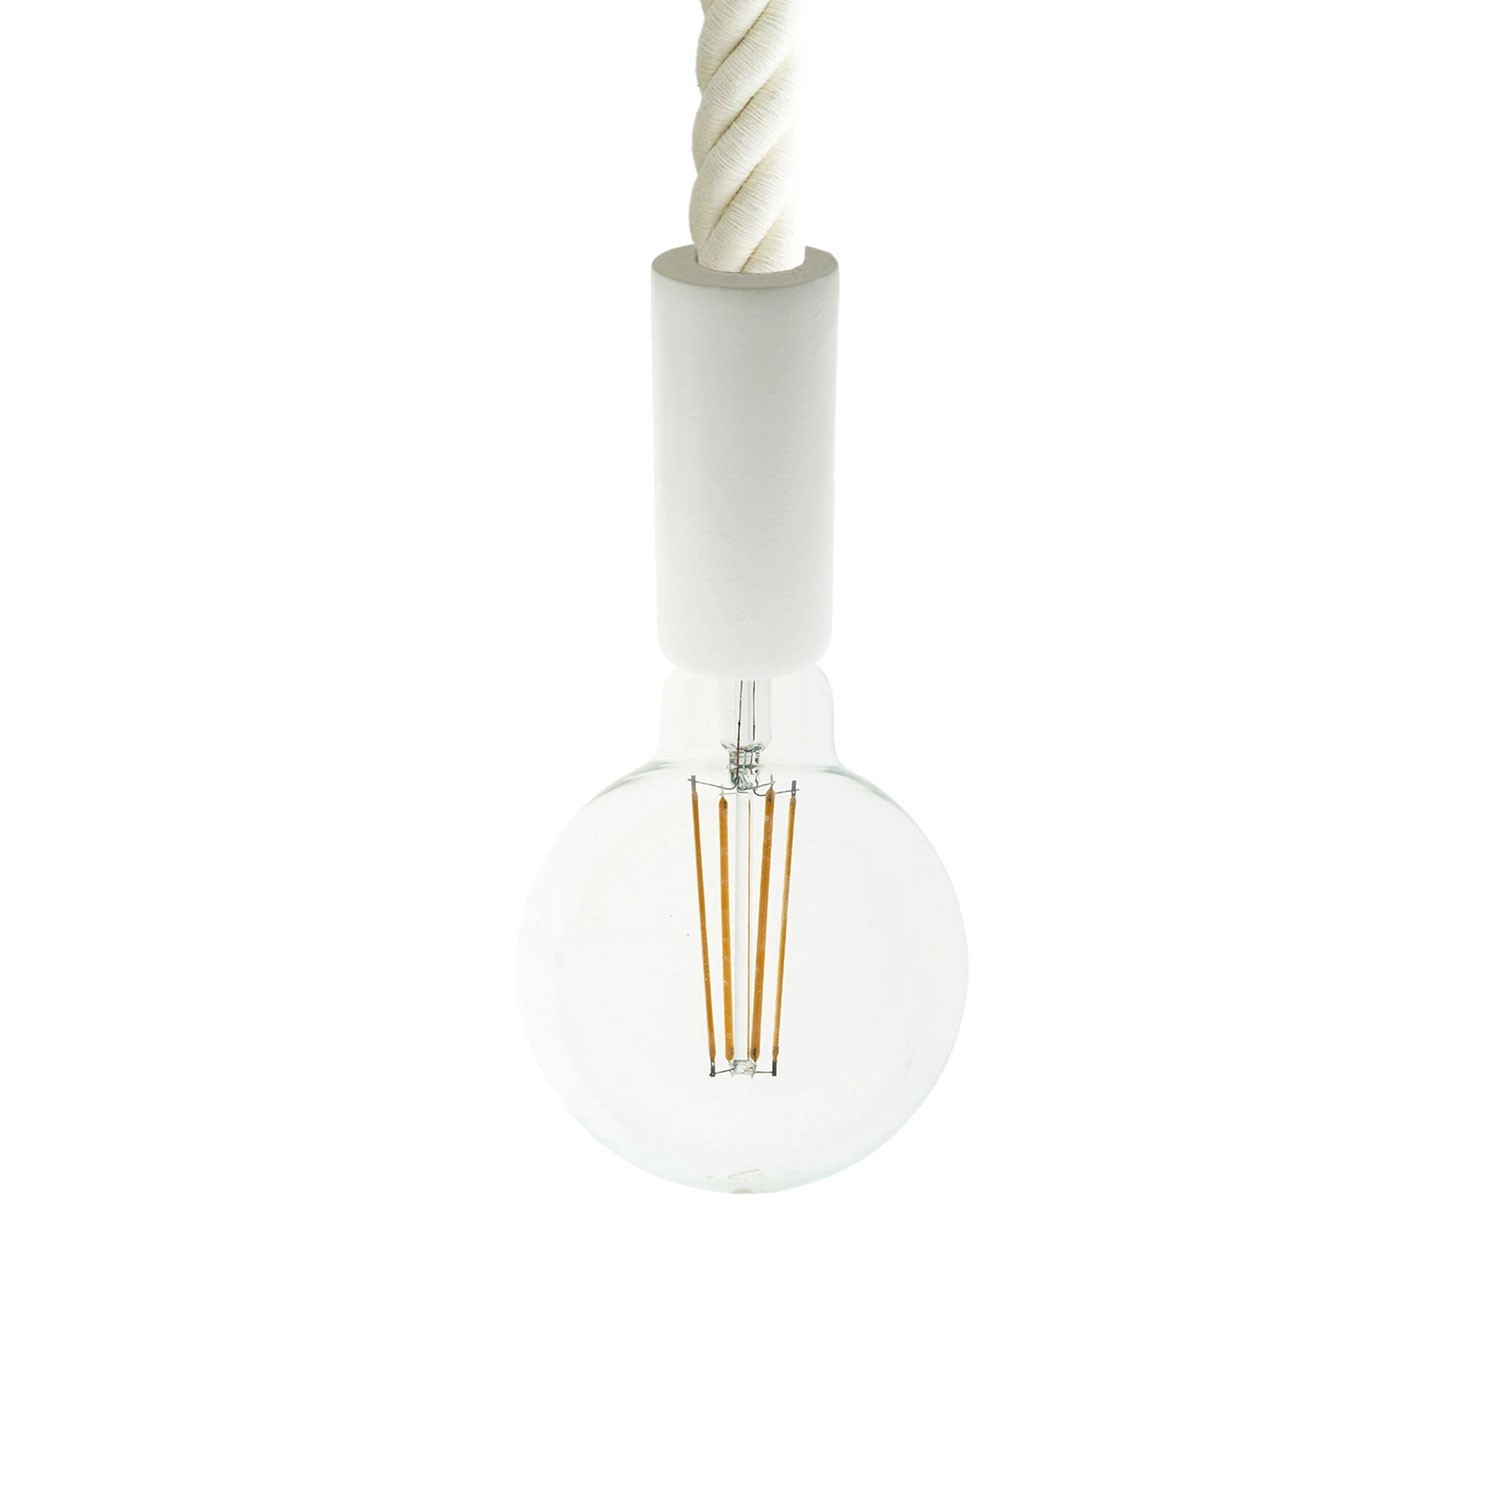 Lampada a sospensione con cordone nautico 3XL 30 mm con finiture in legno verniciato - Made in Italy